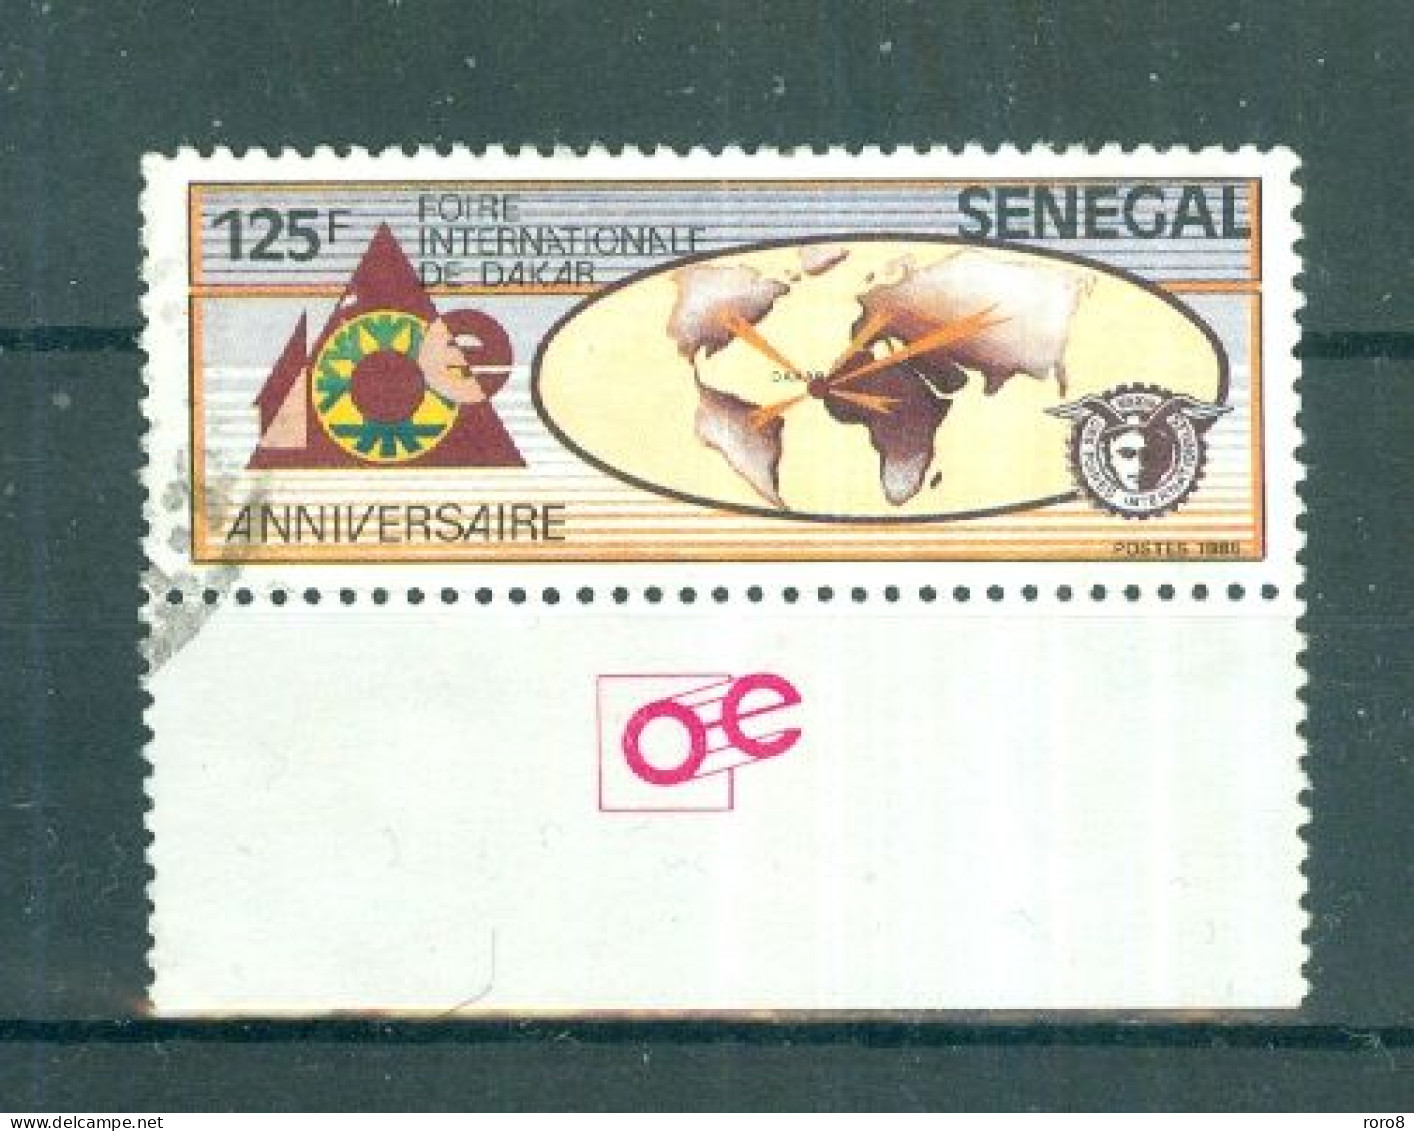 REPUBLIQUE DU SENEGAL - N°744 Oblitéré - Foire Internationale De Dakar. Bord De Feuille. - Senegal (1960-...)